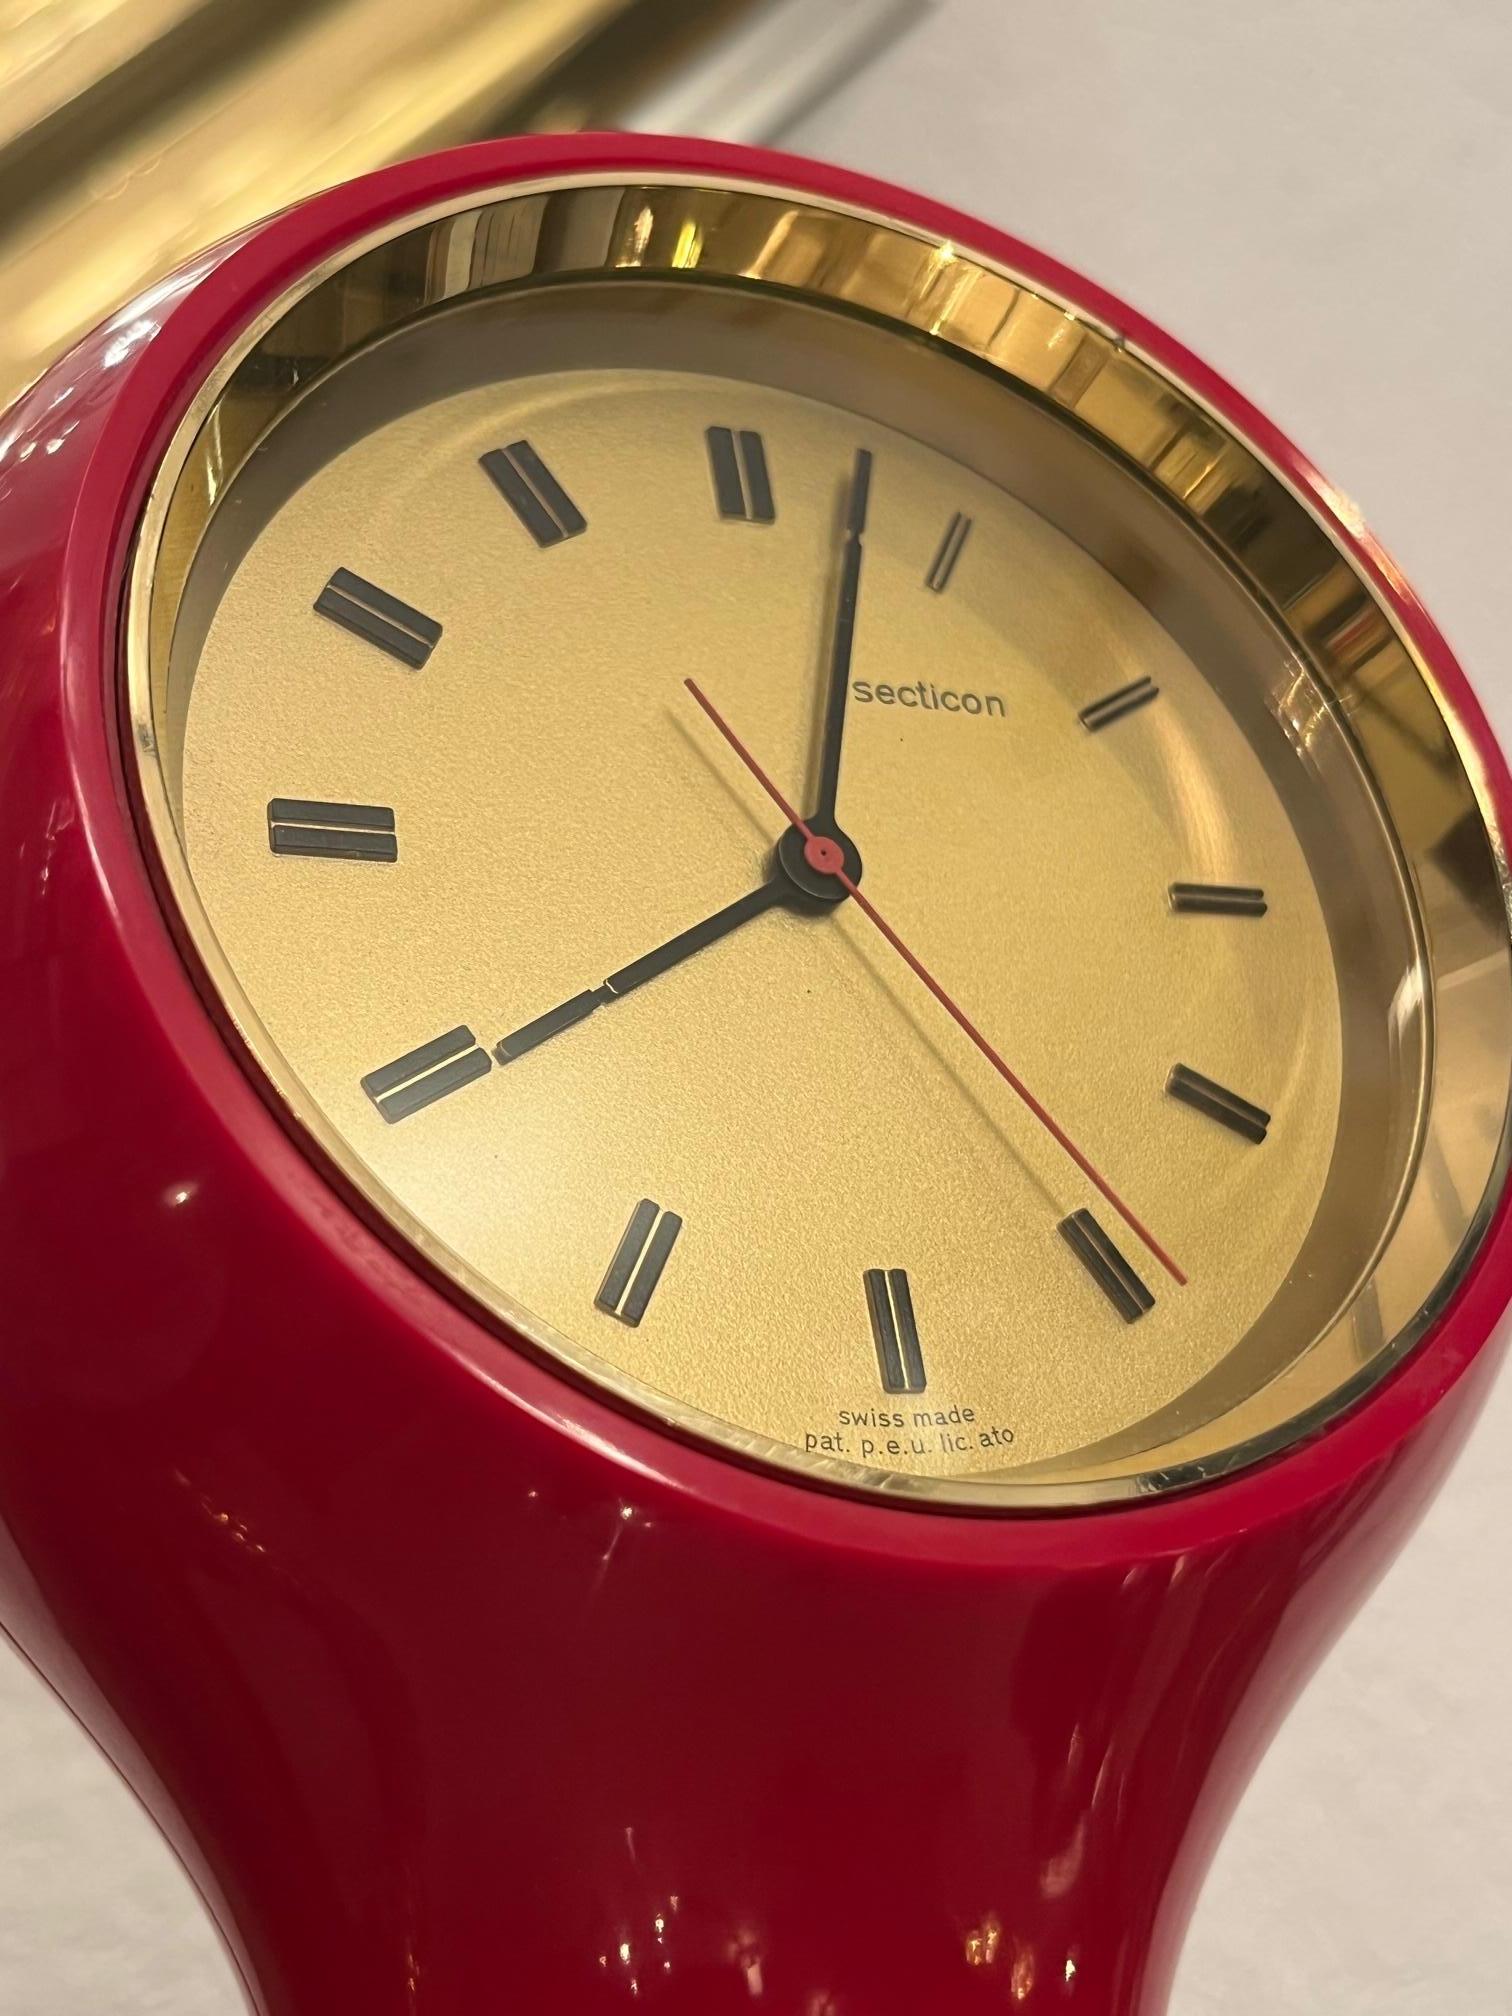 Suisse Horloge de table Secticon Mod. T1 d'Angelo Mangiarotti, fabrication suisse, 1956